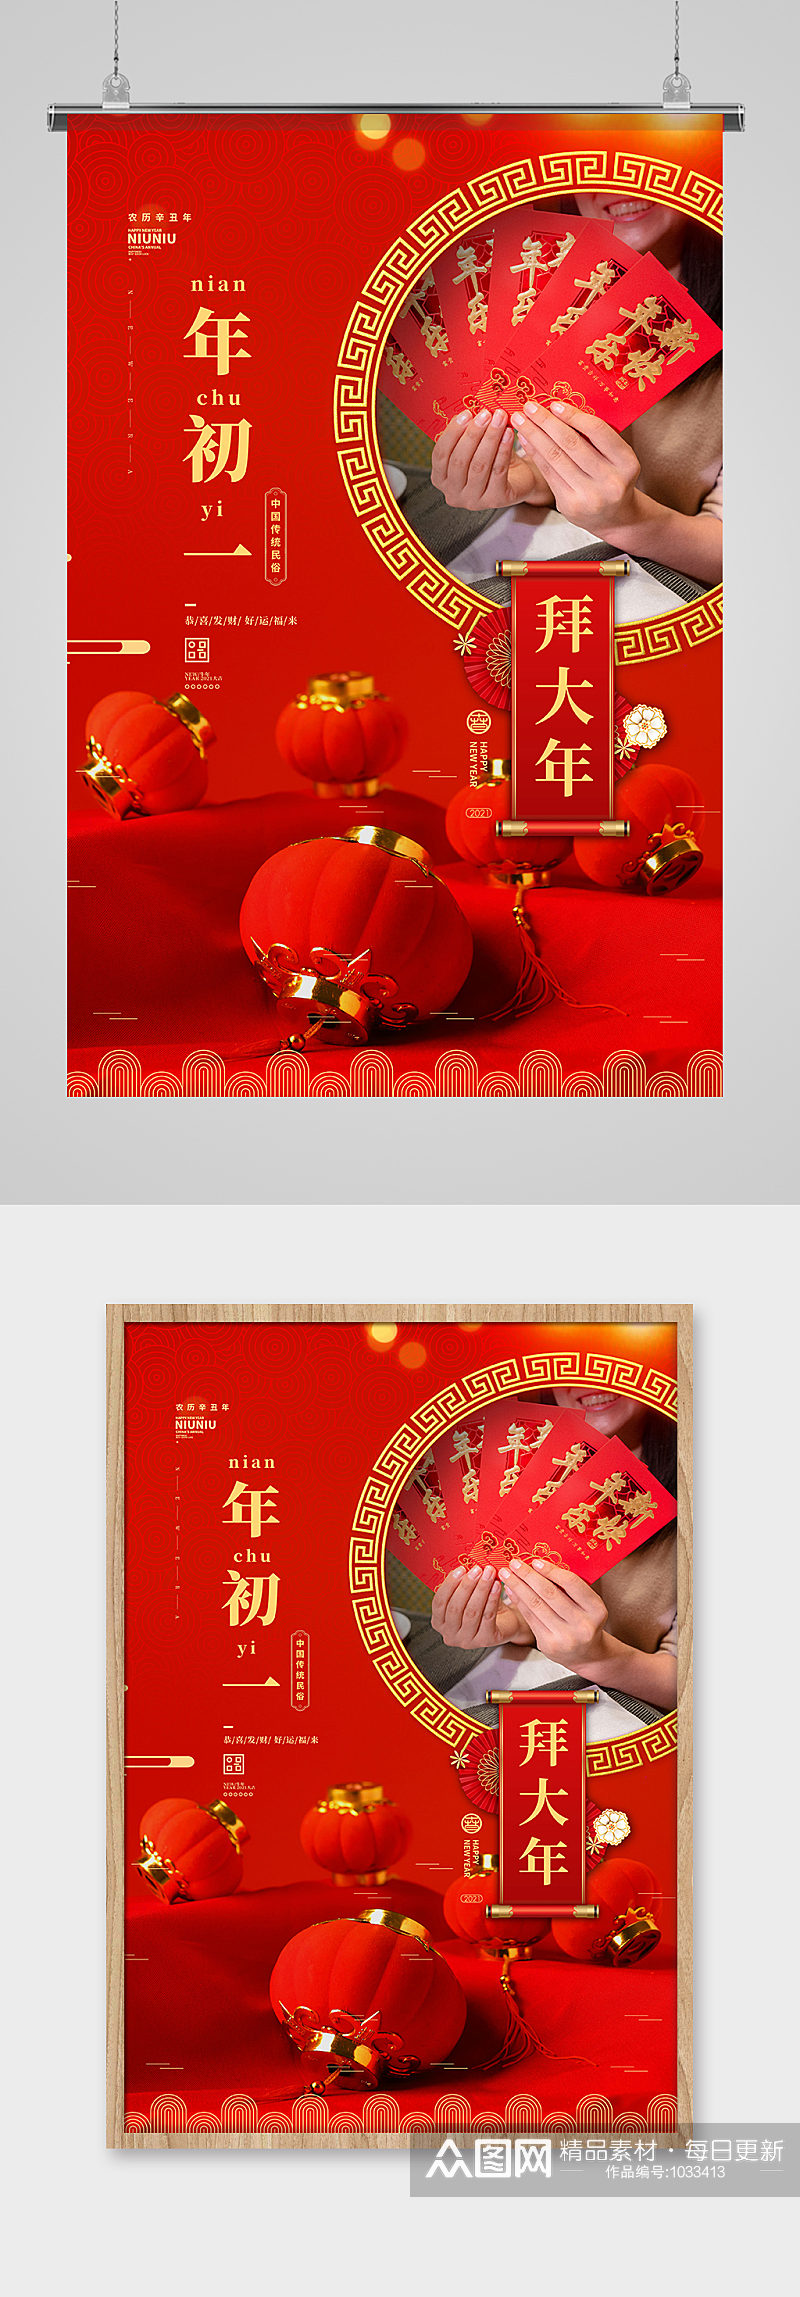 大年初一拜大年过年春节风俗红色简约海报素材